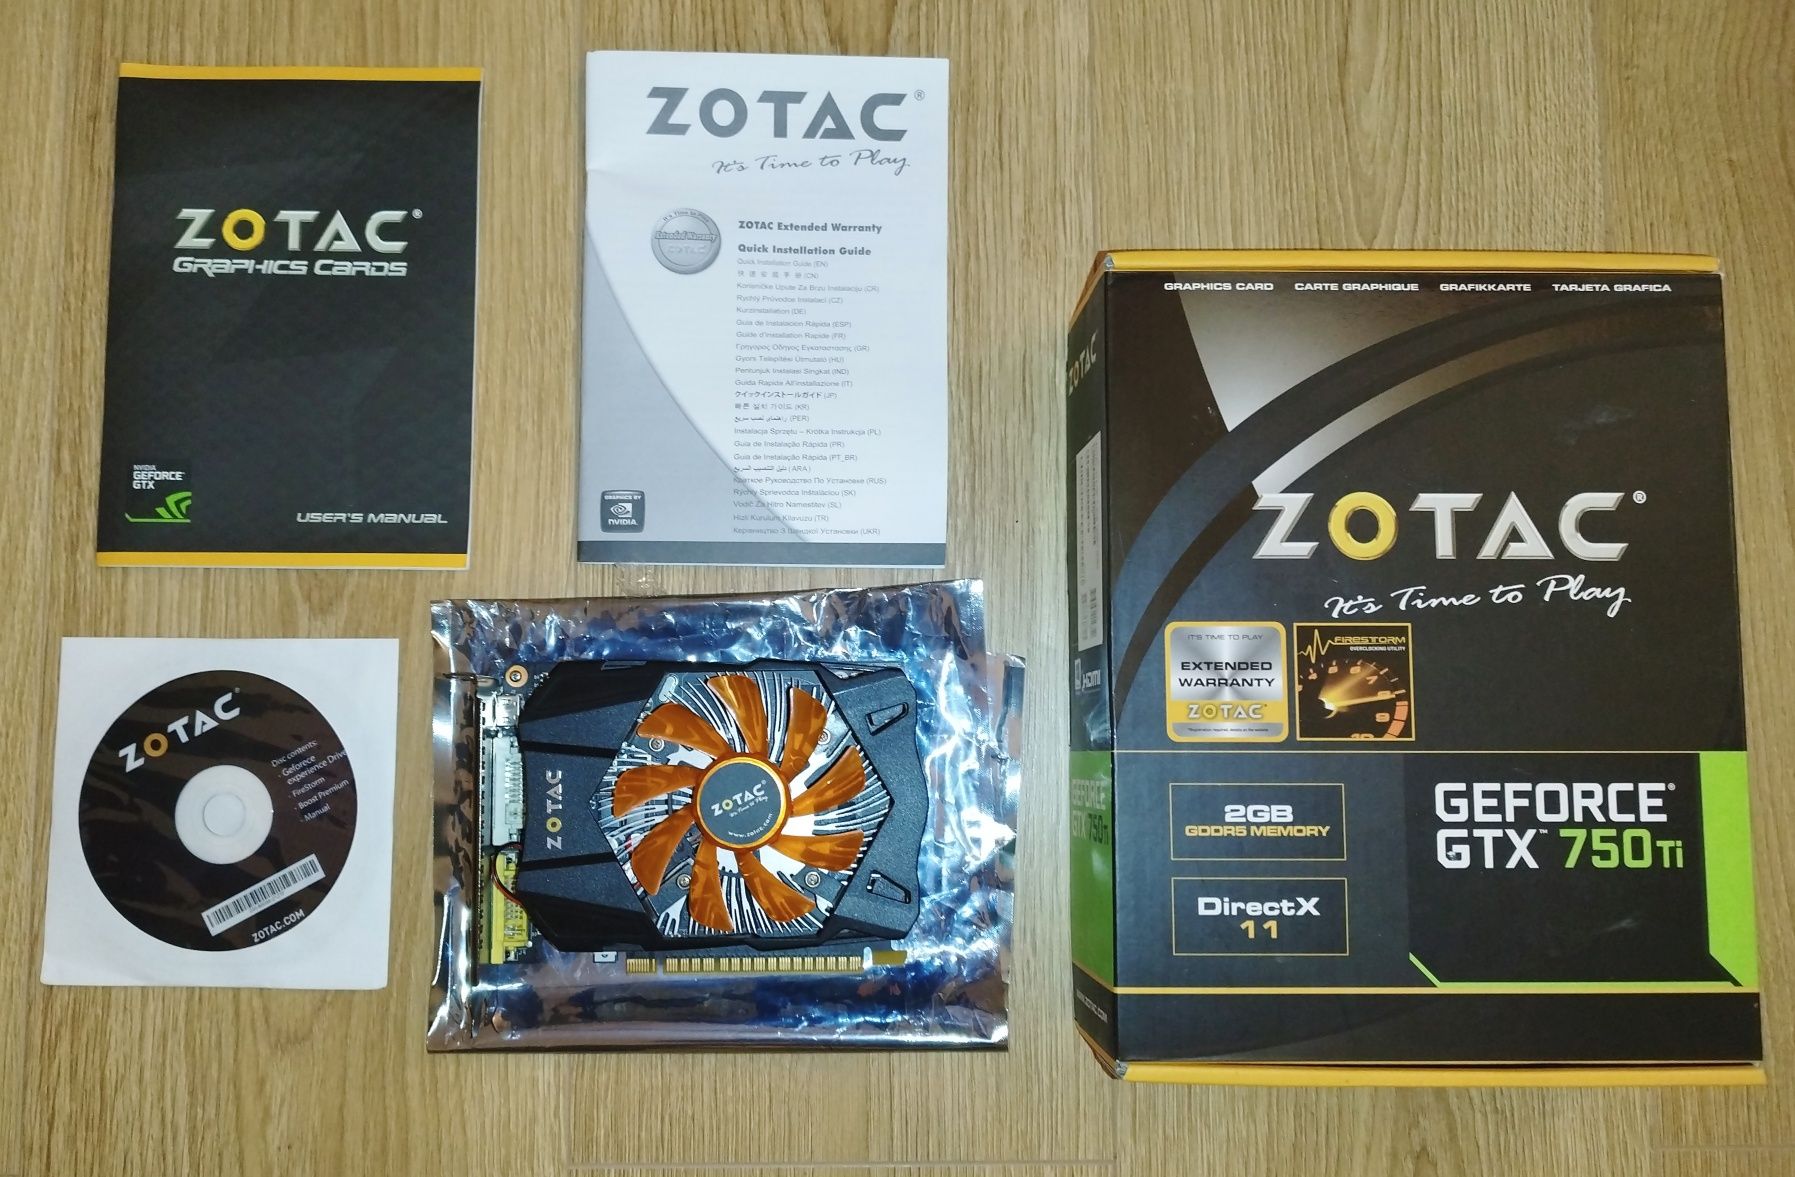 GeForce GTX 750 TI Zotac